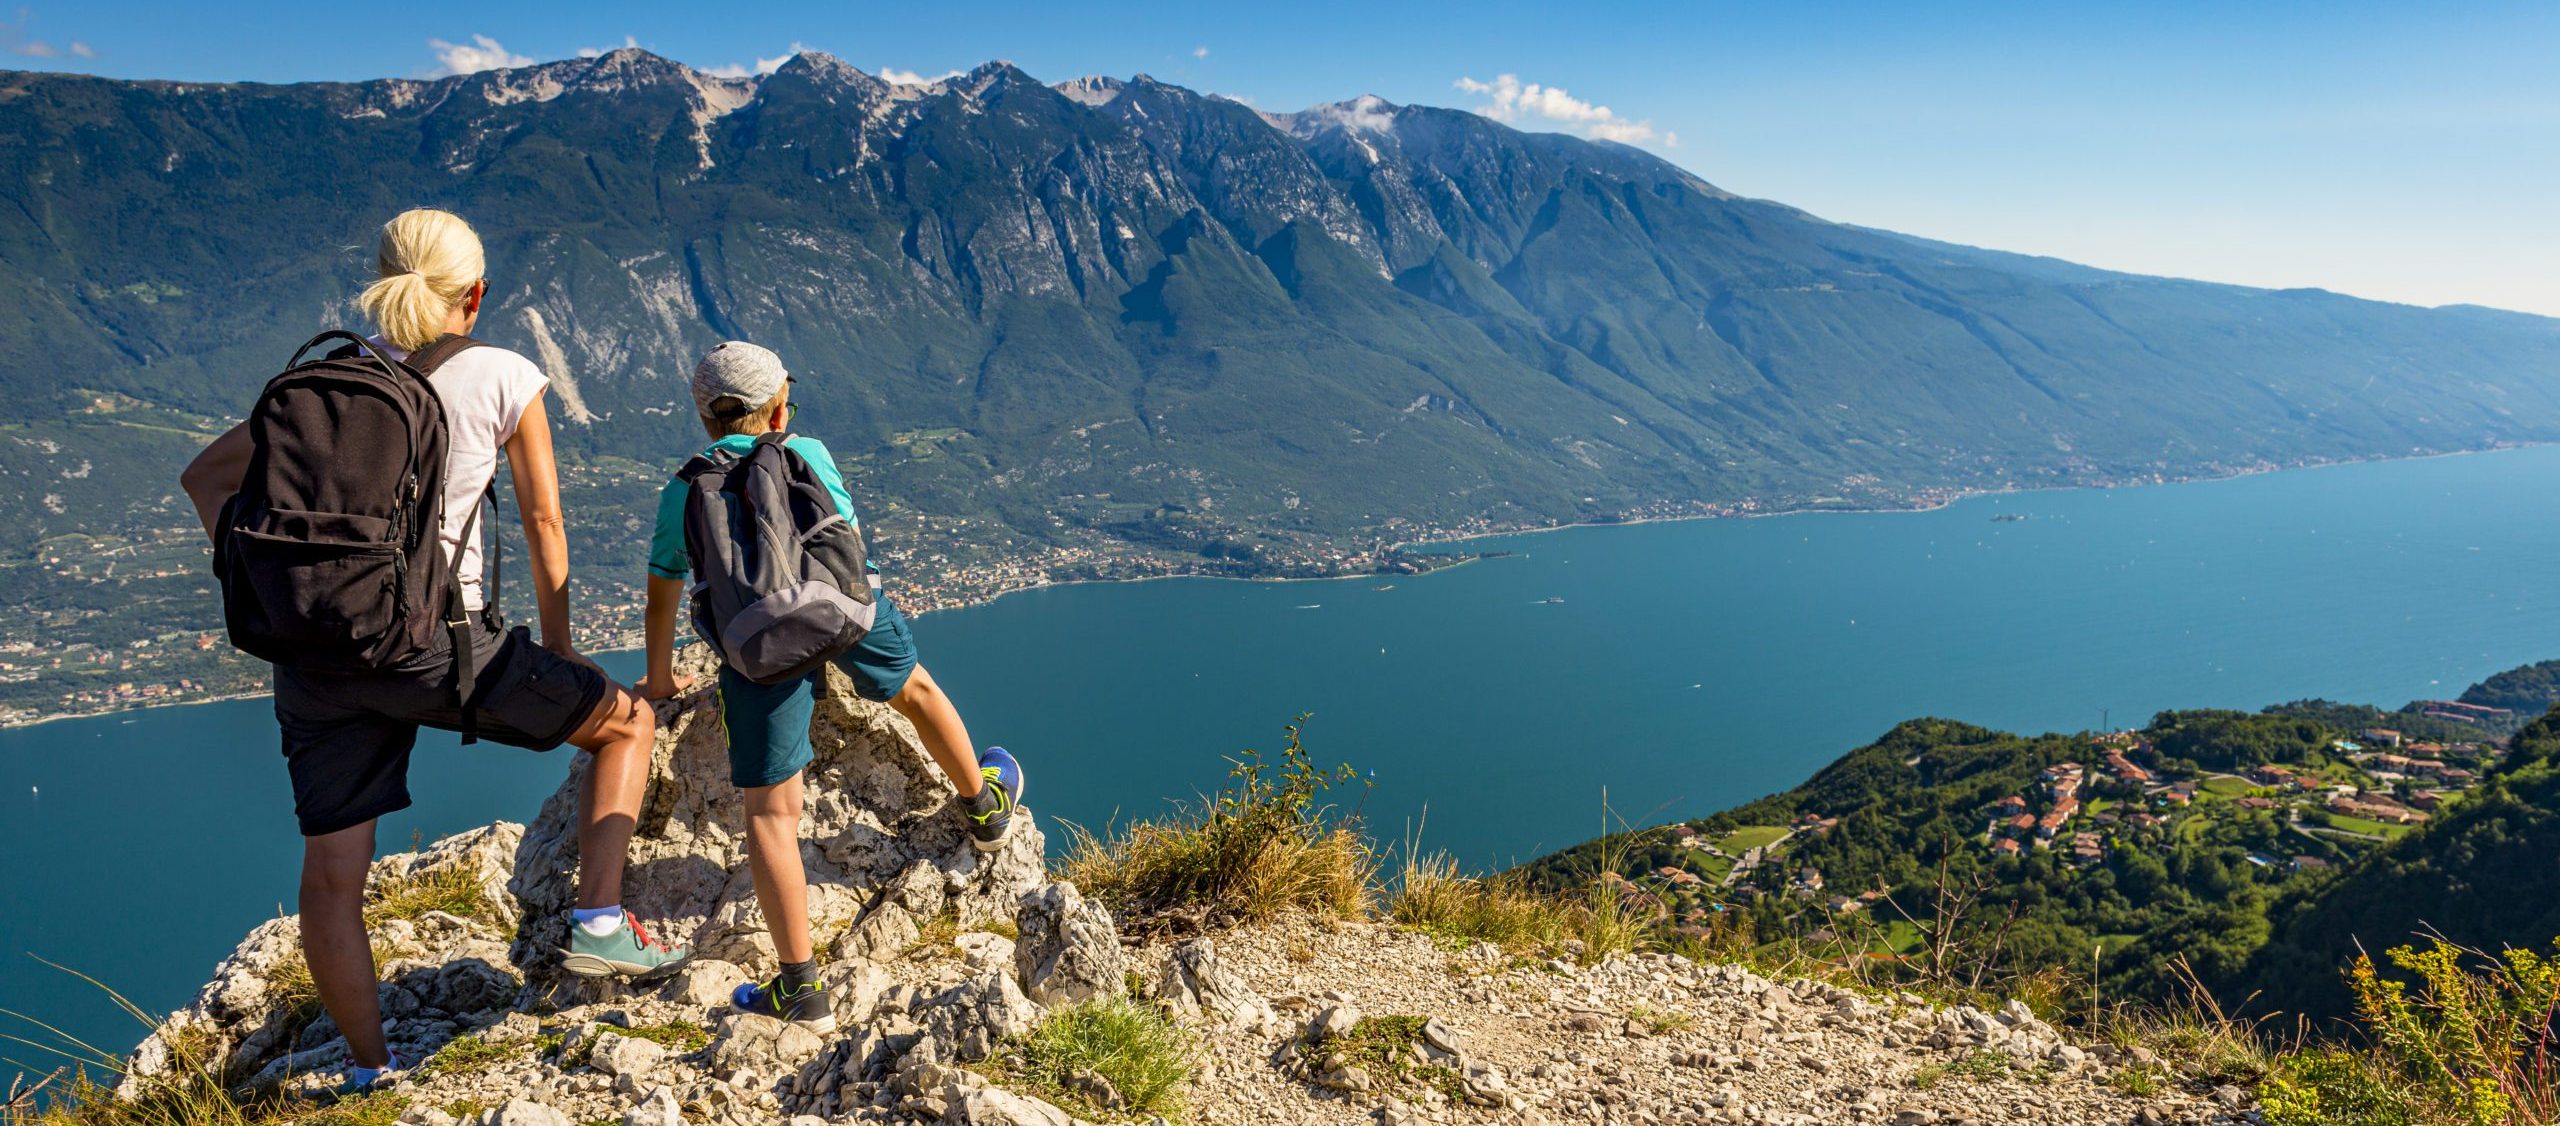 Esplora il Monte Baldo: un paradiso per gli amanti della natura affacciato sul Lago di Garda